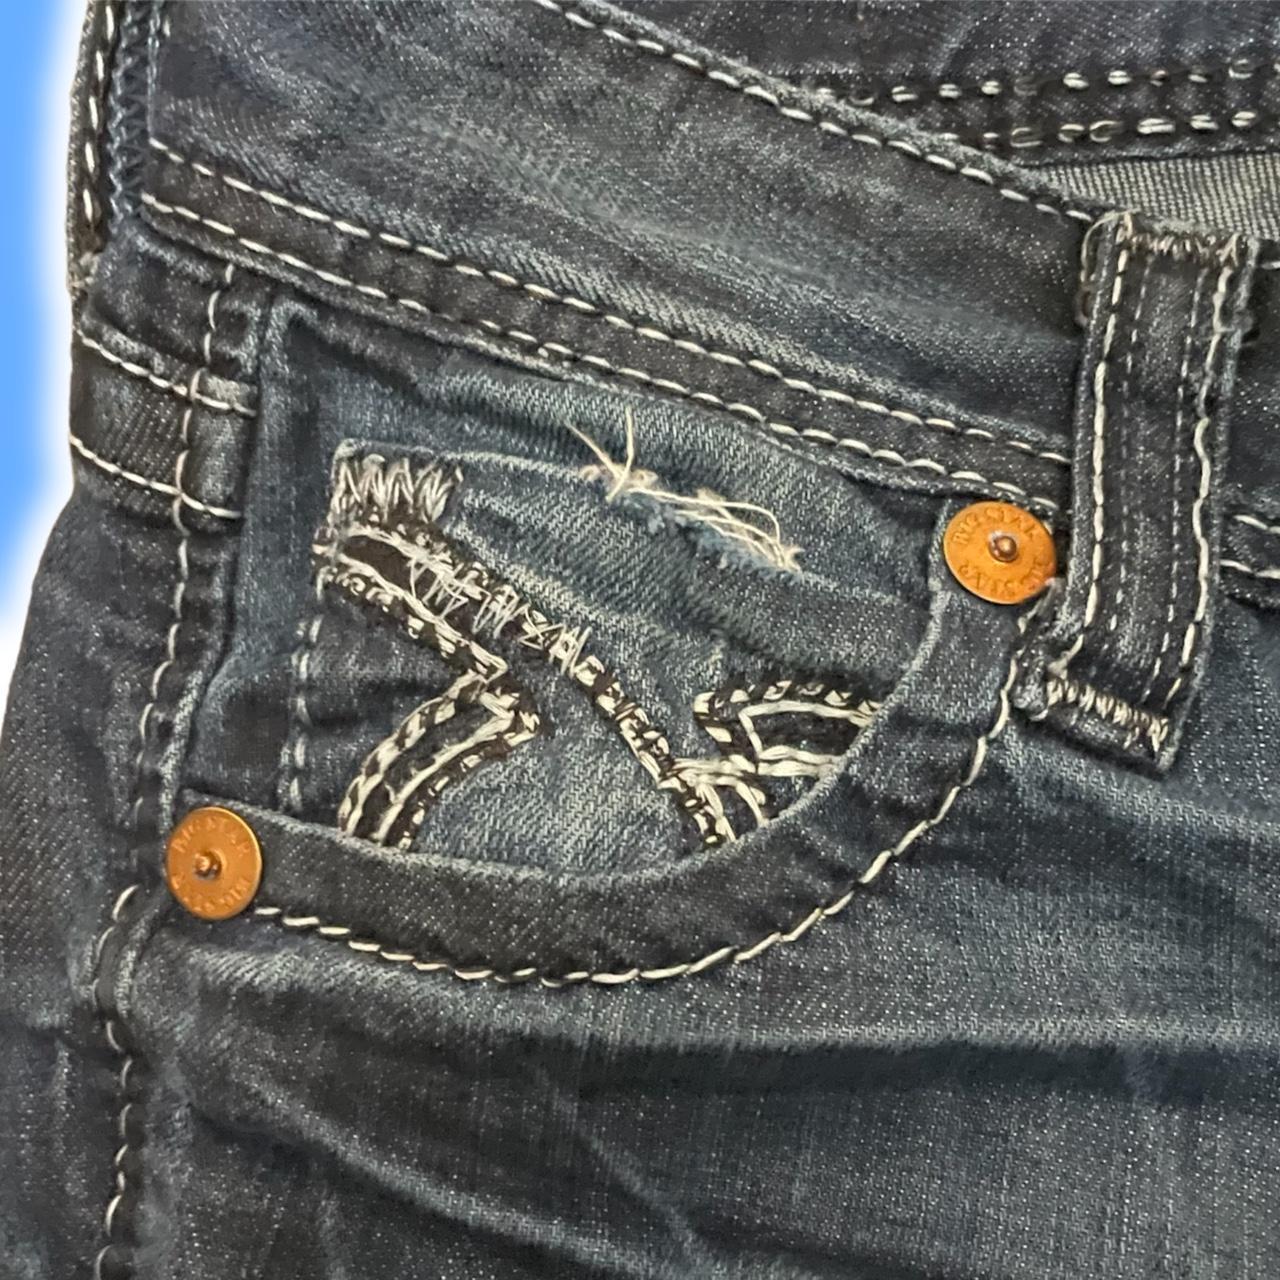 Lowrise Y2K/Grunge Jeans Stitch Bootcut Jeans.... - Depop